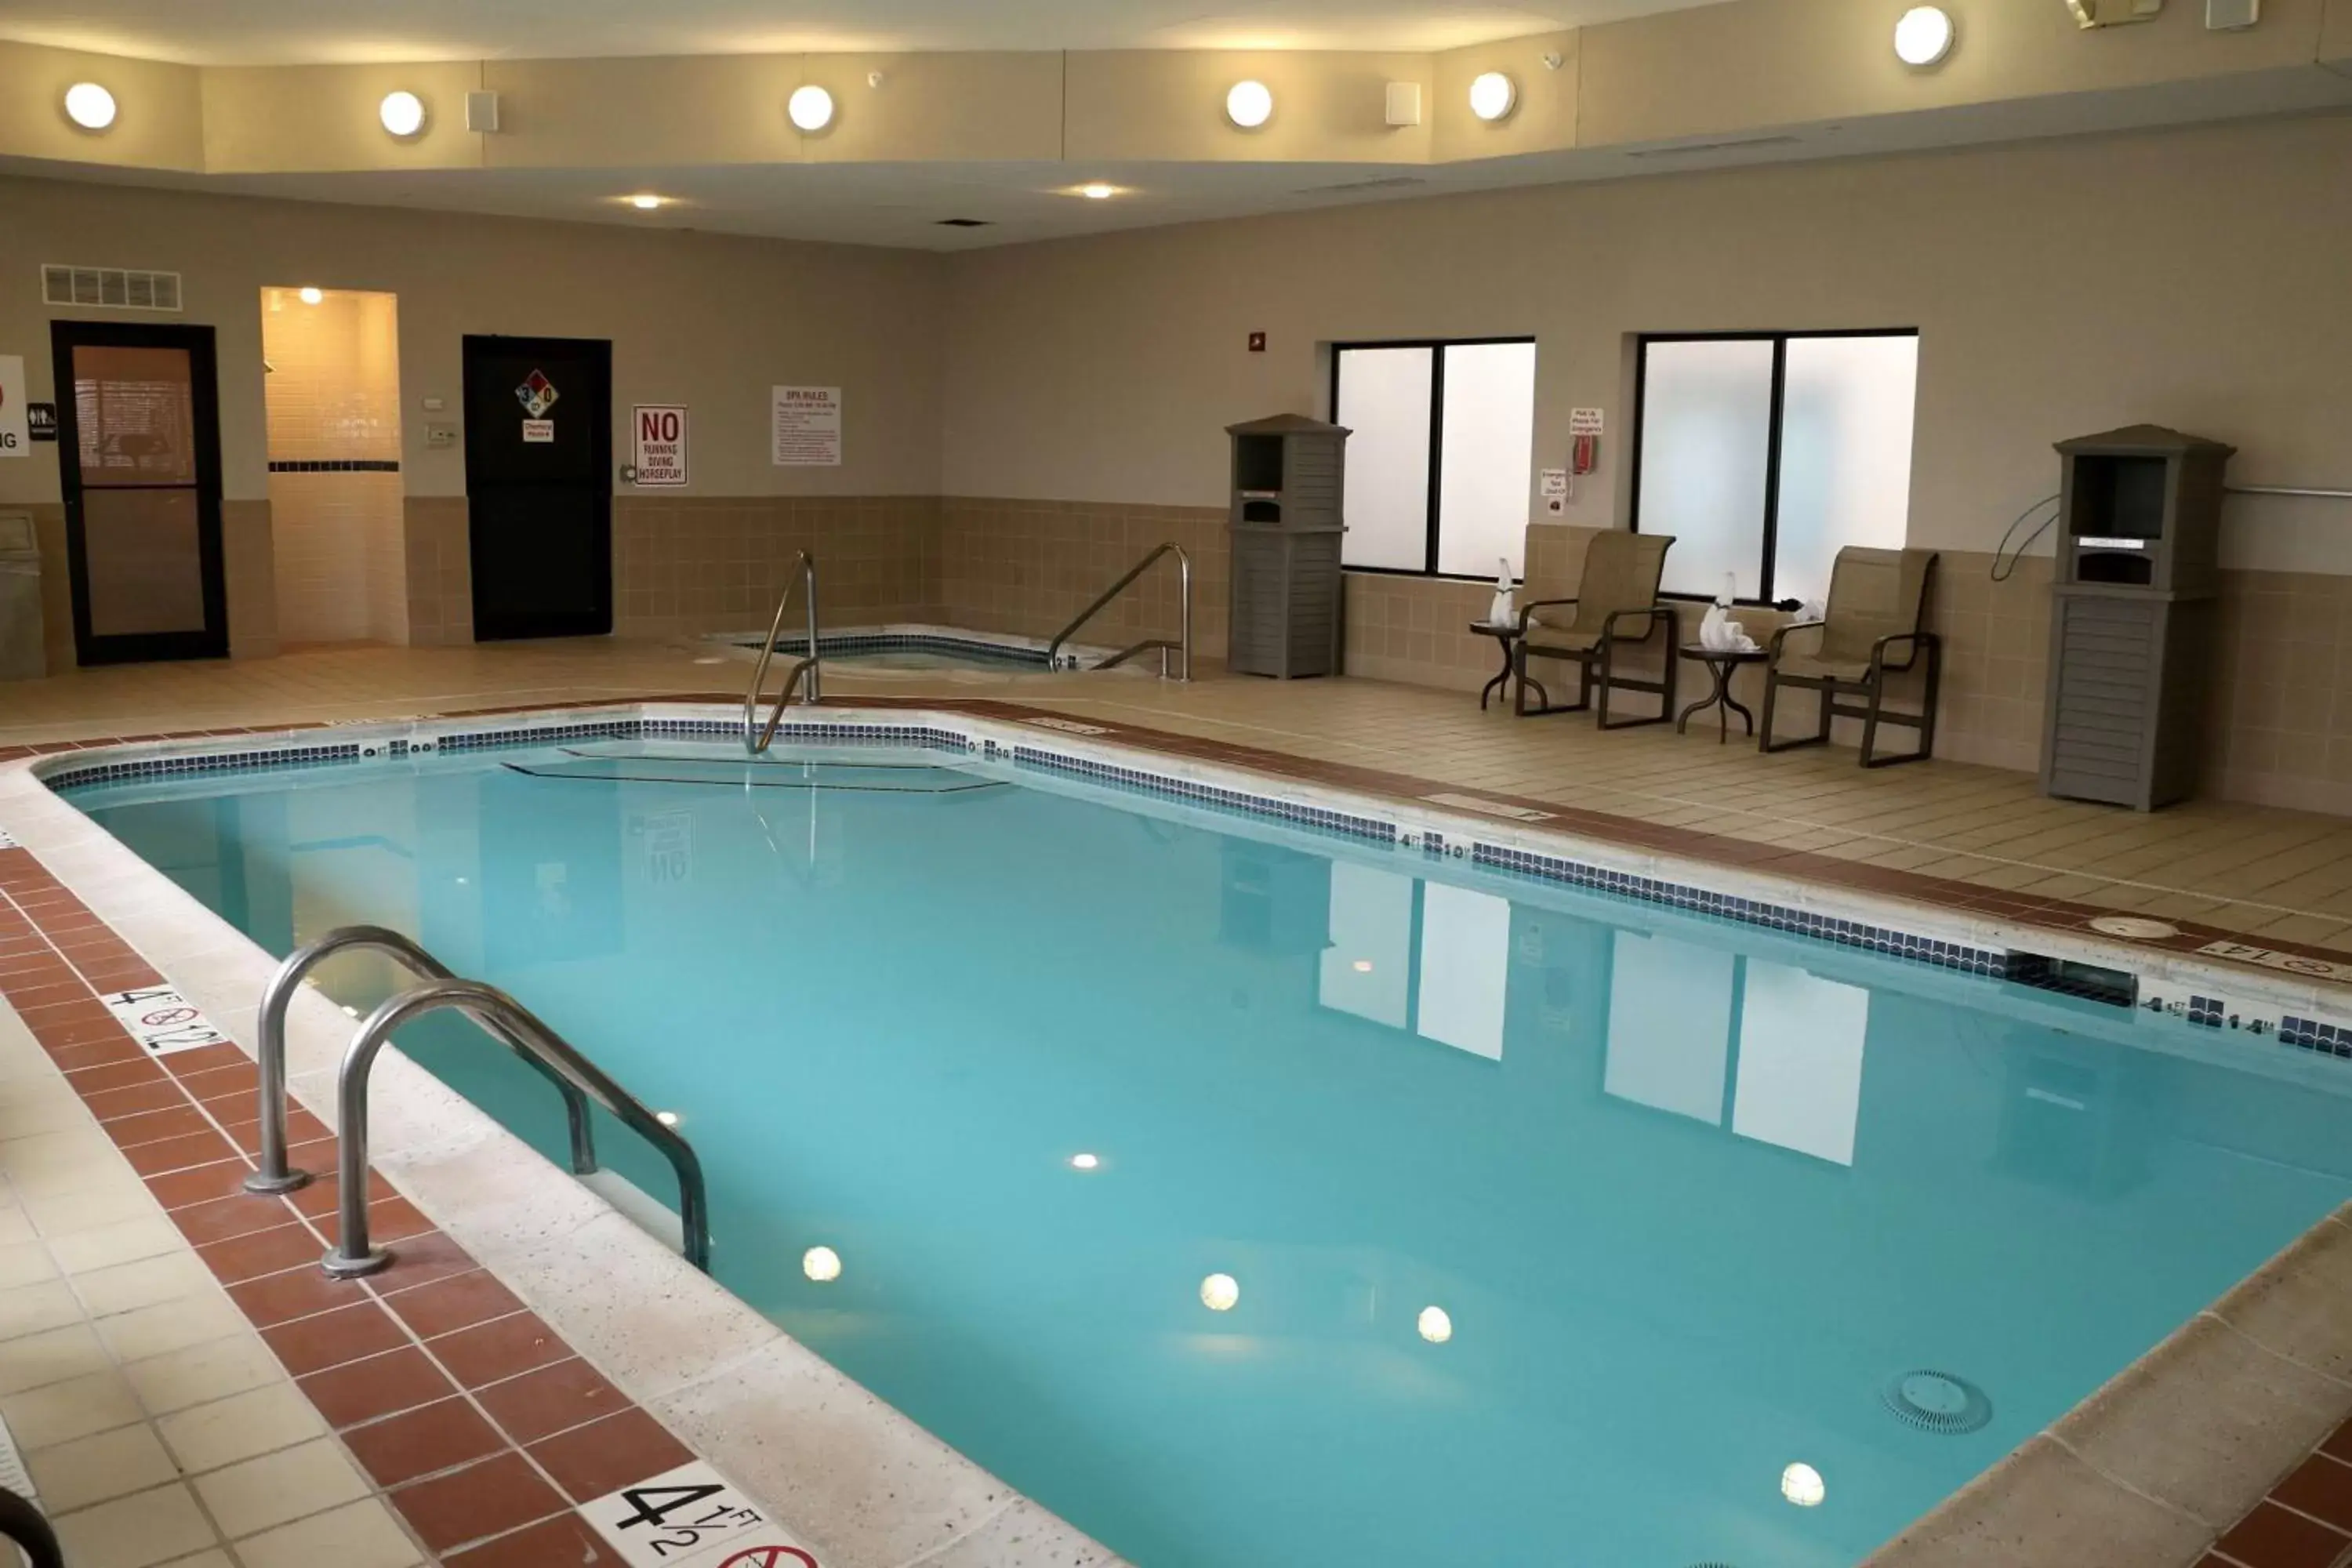 On site, Swimming Pool in Best Western Plus Omaha Airport Inn